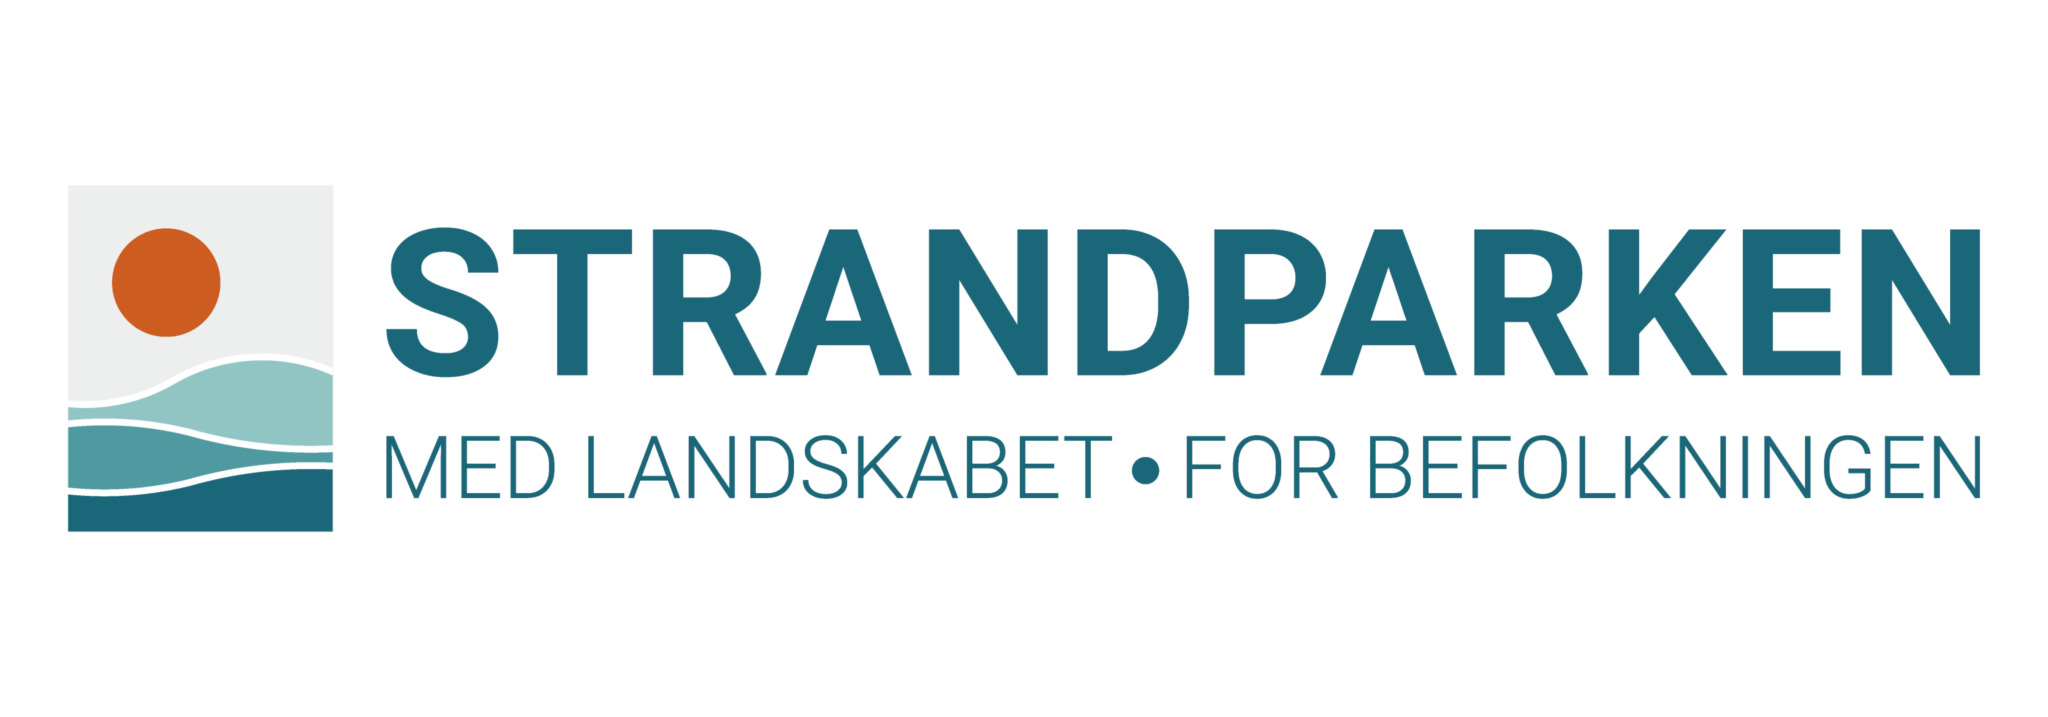 Strandparkens logo og tekst "Med landskabet, for befolkningen"